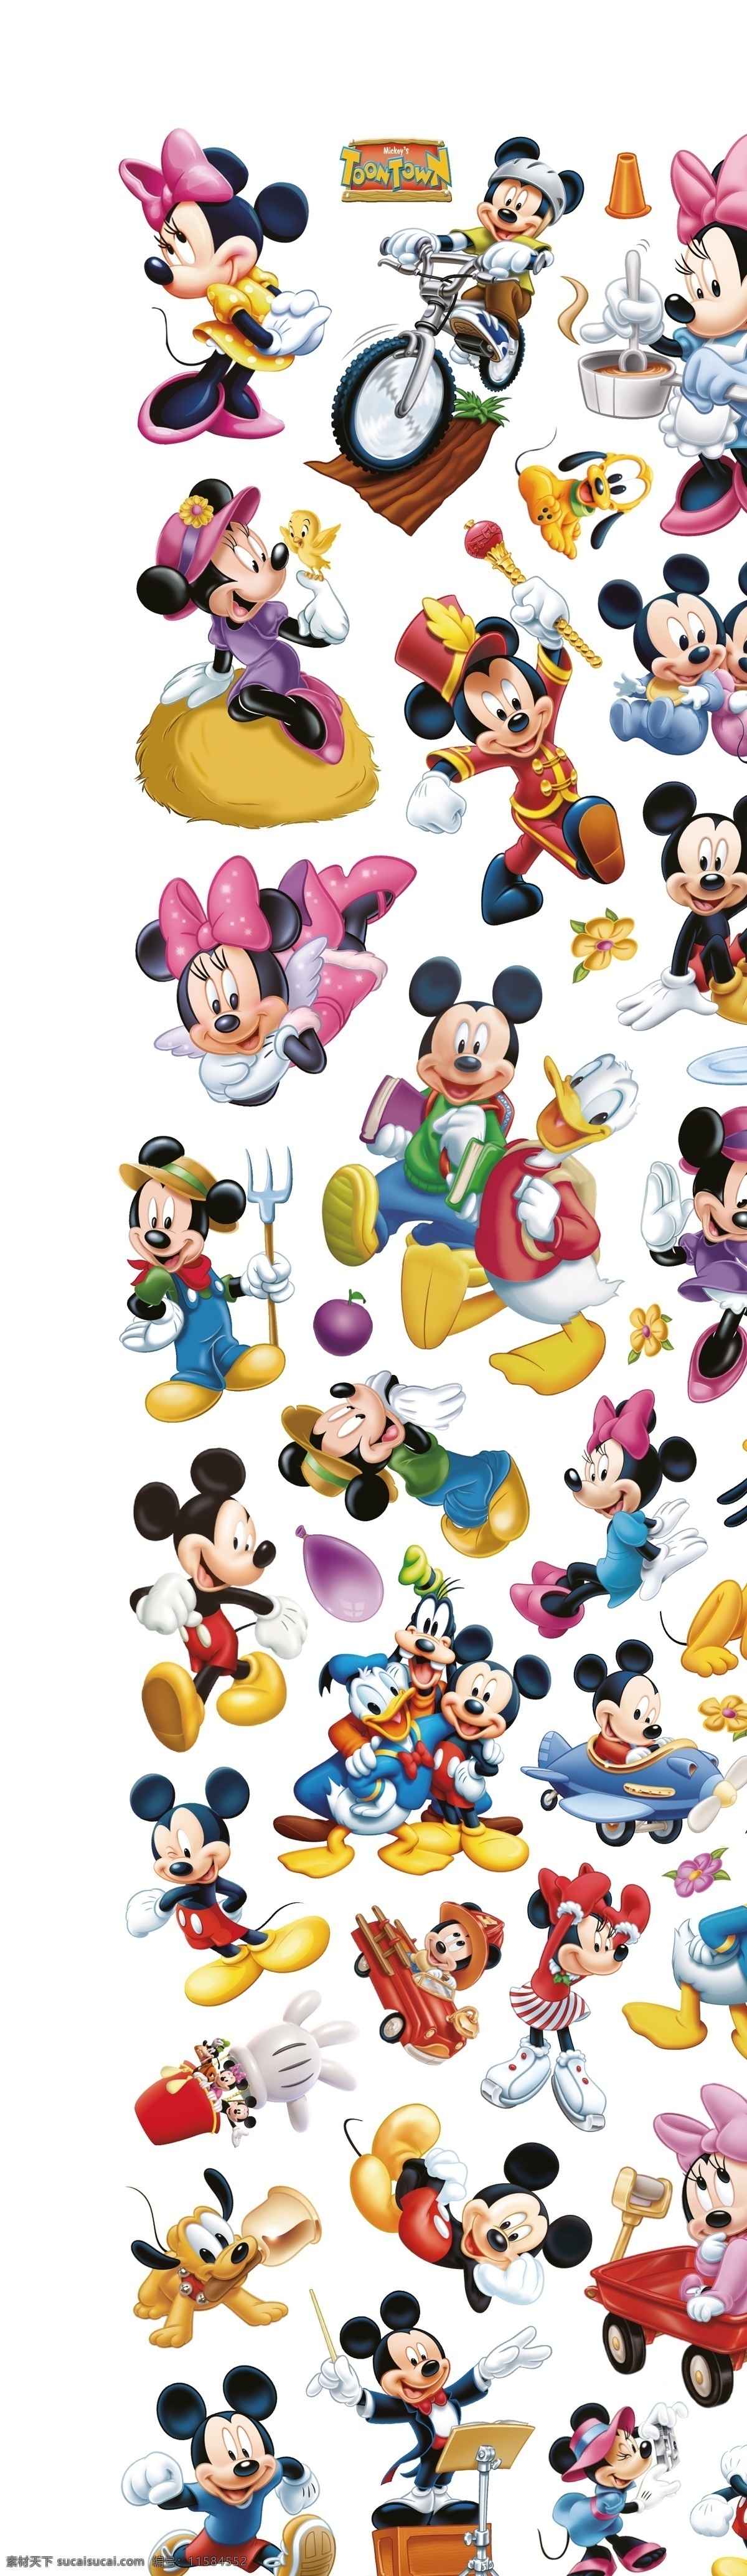 米老鼠 米奇 迪士尼 卡通 可爱 汇总 集合 小老鼠 动画 人物 米妮 卡通动漫 动漫动画 动漫人物 妙妙屋